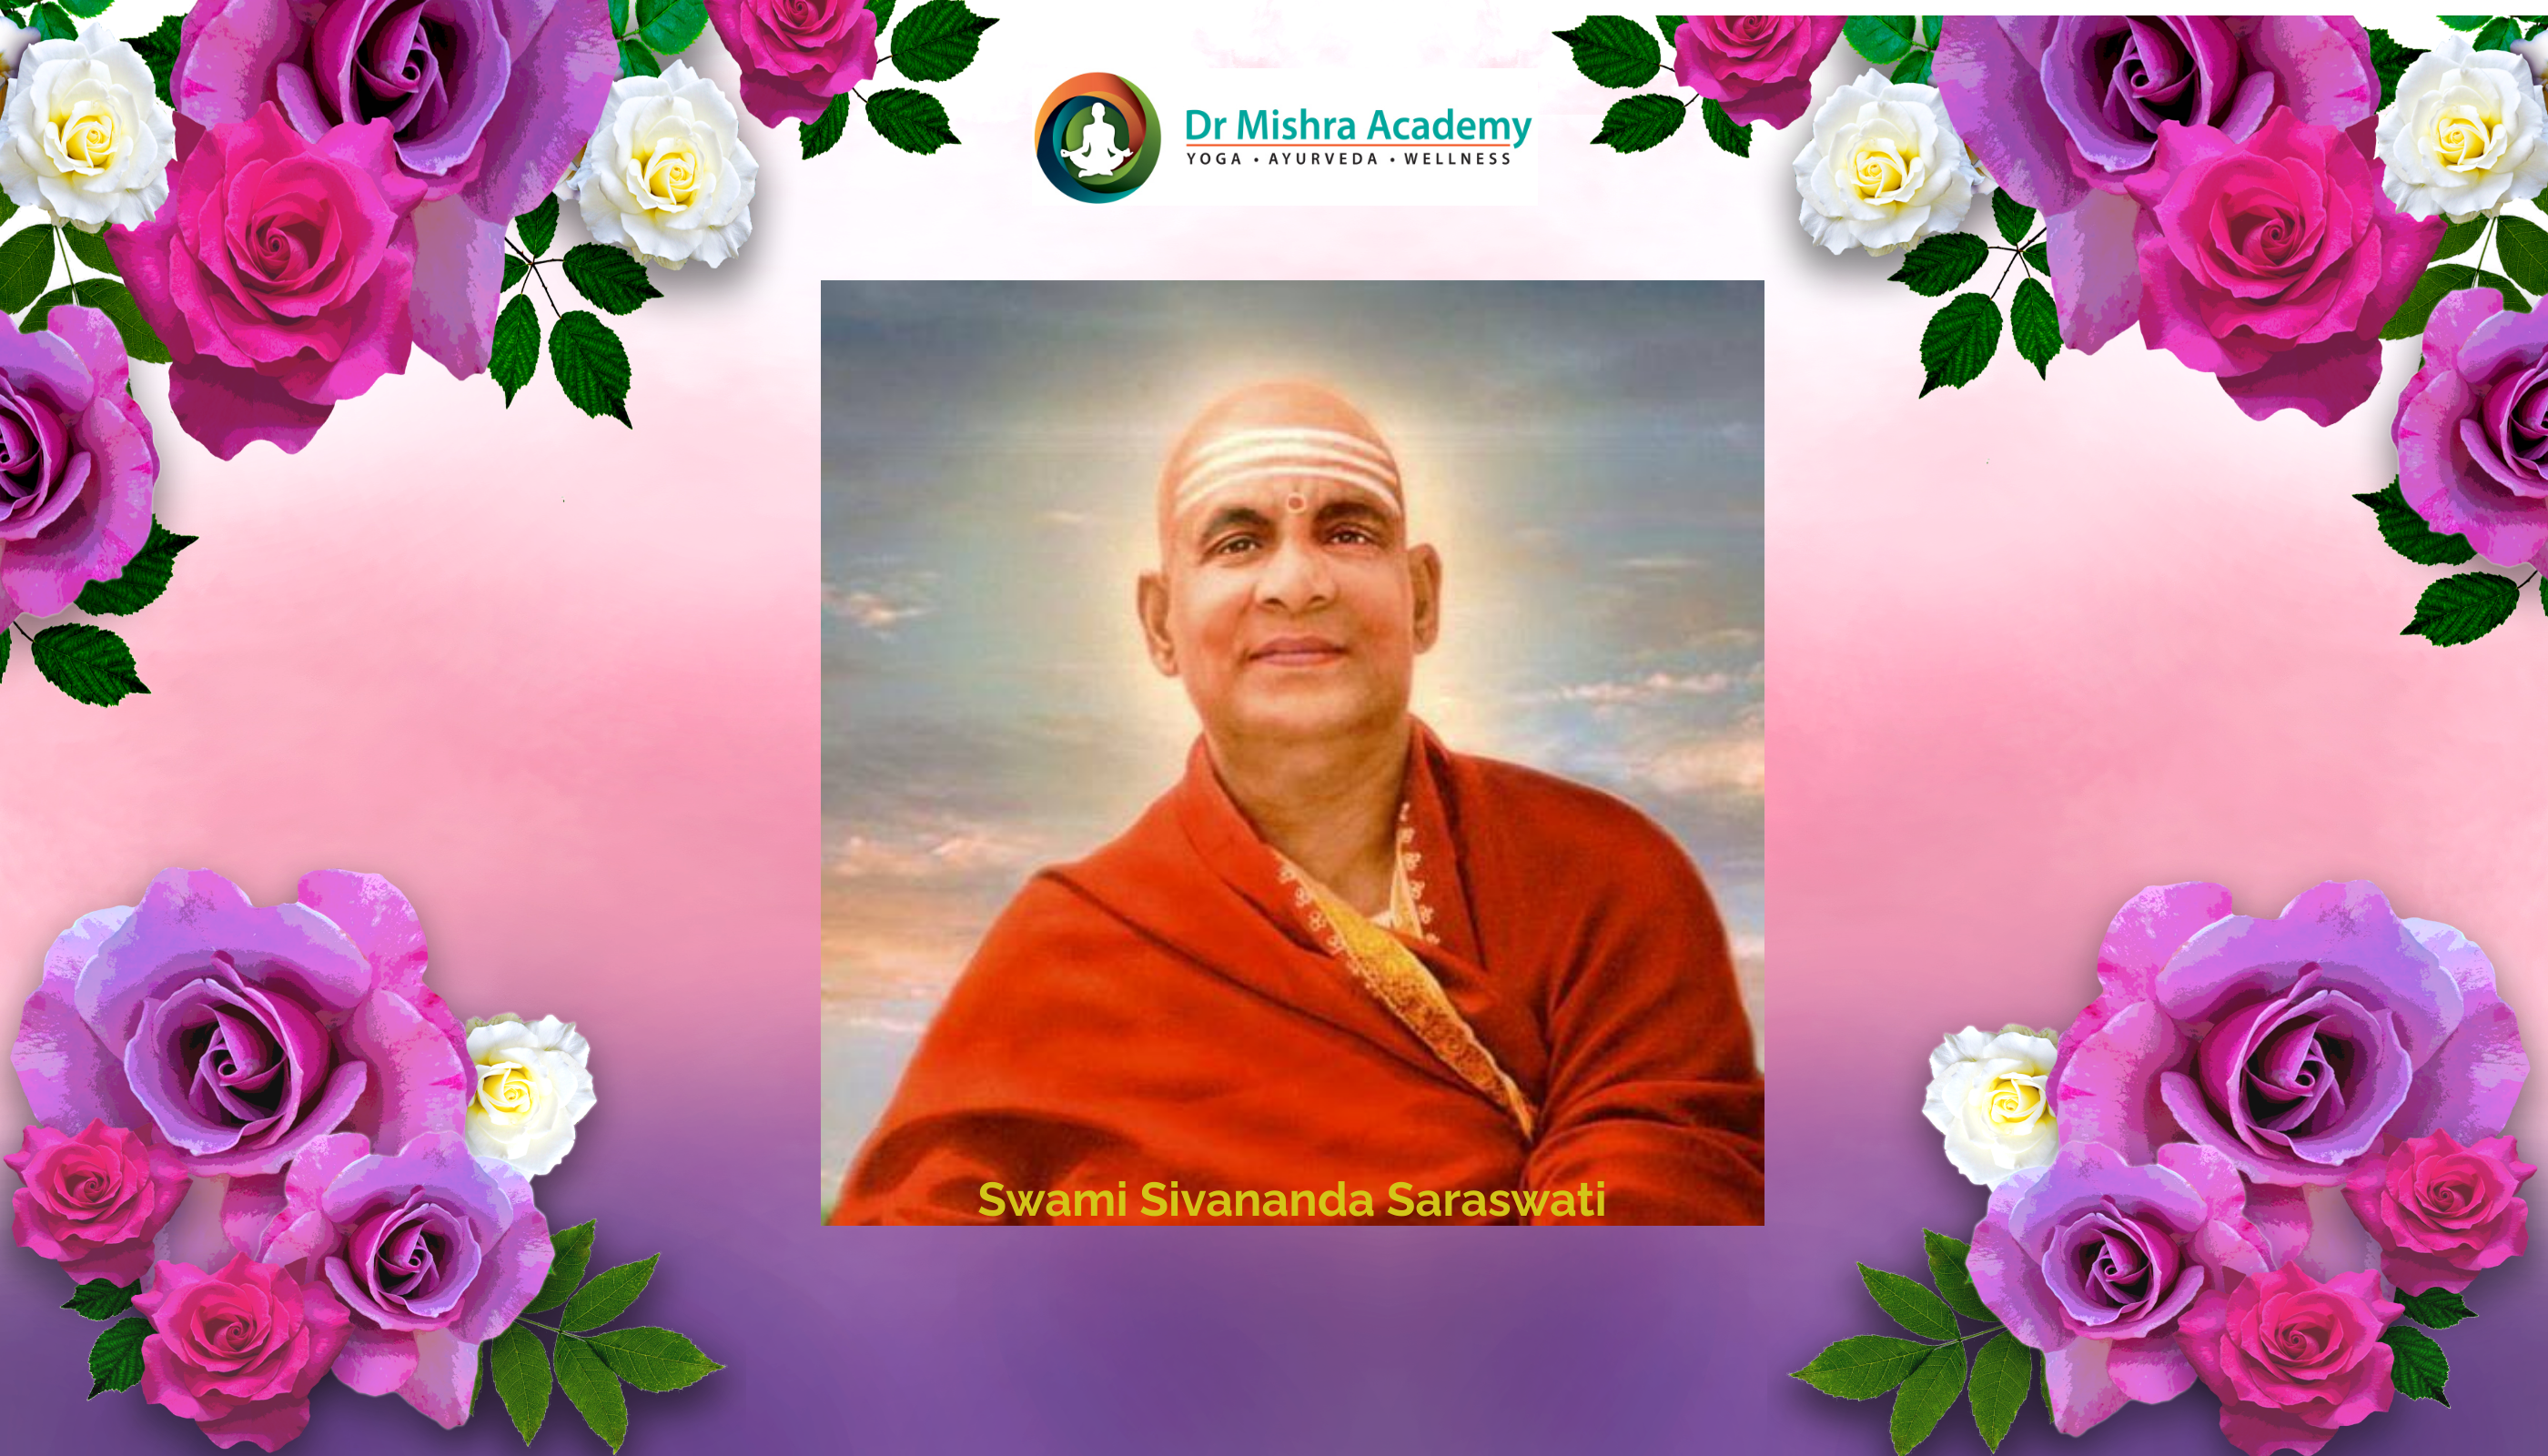 Die Entdeckung von Swami Sivananda aus Rishikesh für spirituelle ErleuchtungRosafarbener Hintergrund mit allen vier Krönungsblumen in der Hand. Middle Swami Sivananda Saraswati ji Bild und Dr. Mishra Academy Logo auf der Oberseite des Flyers.